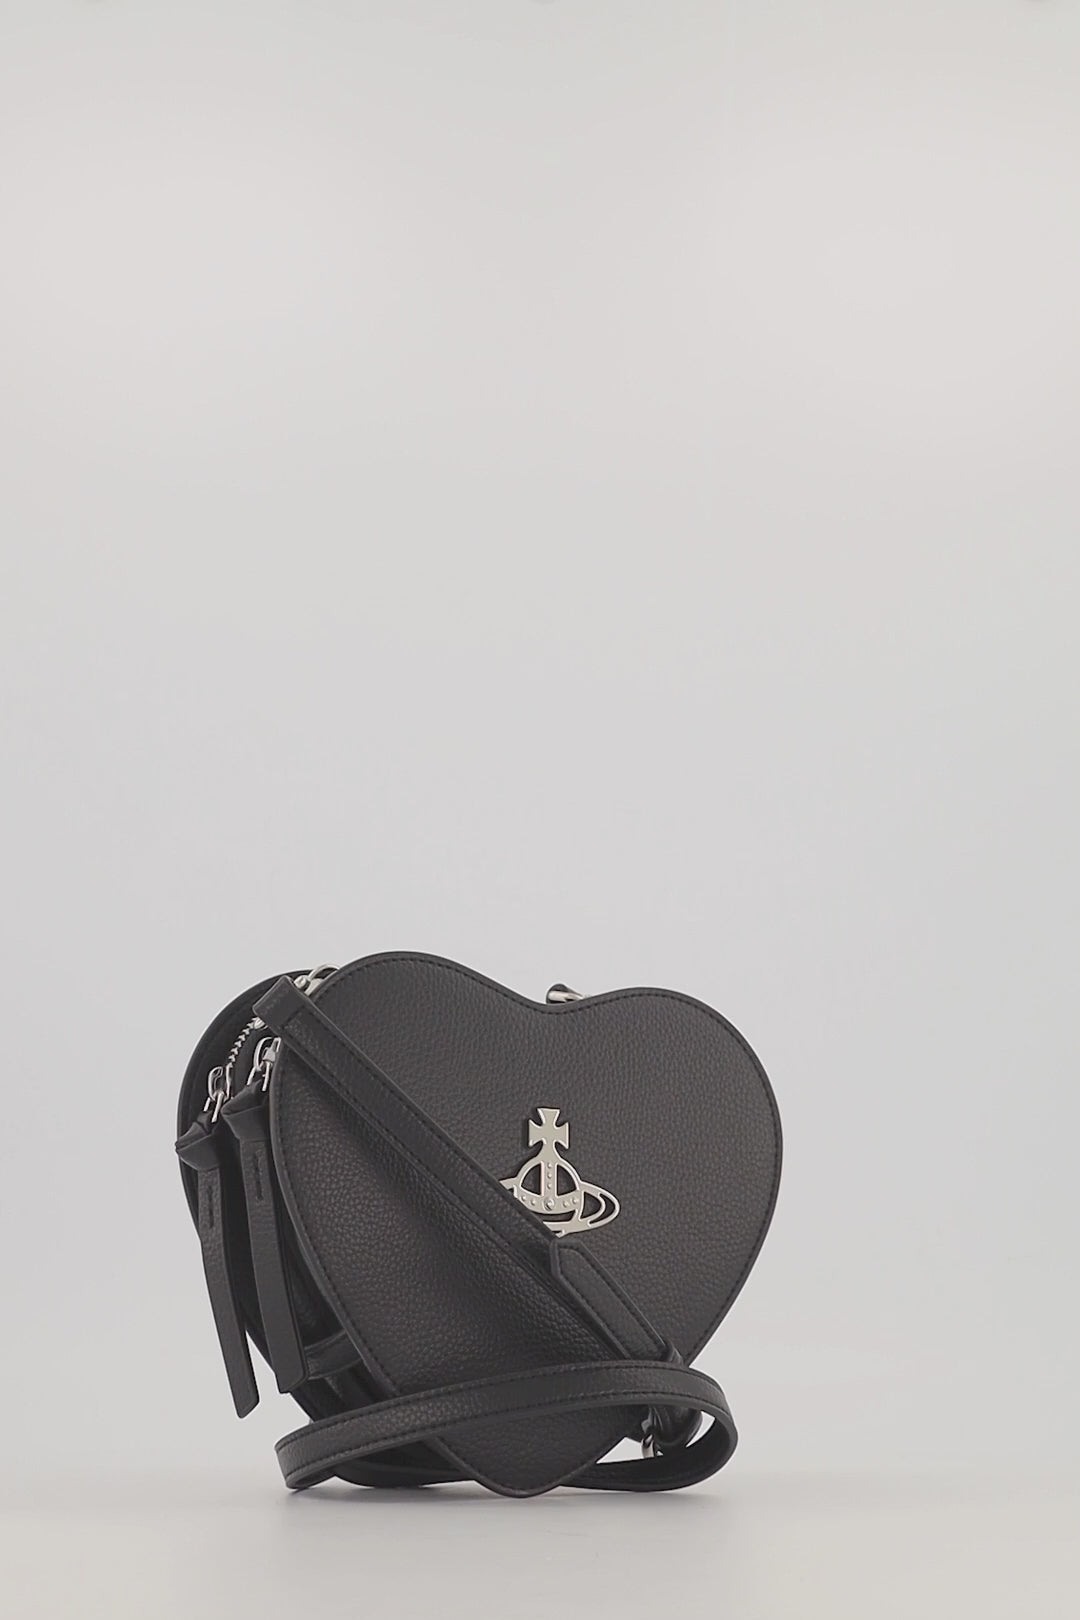 Vivienne Westwood, Bags, Vivienne Westwood Heart Handbag